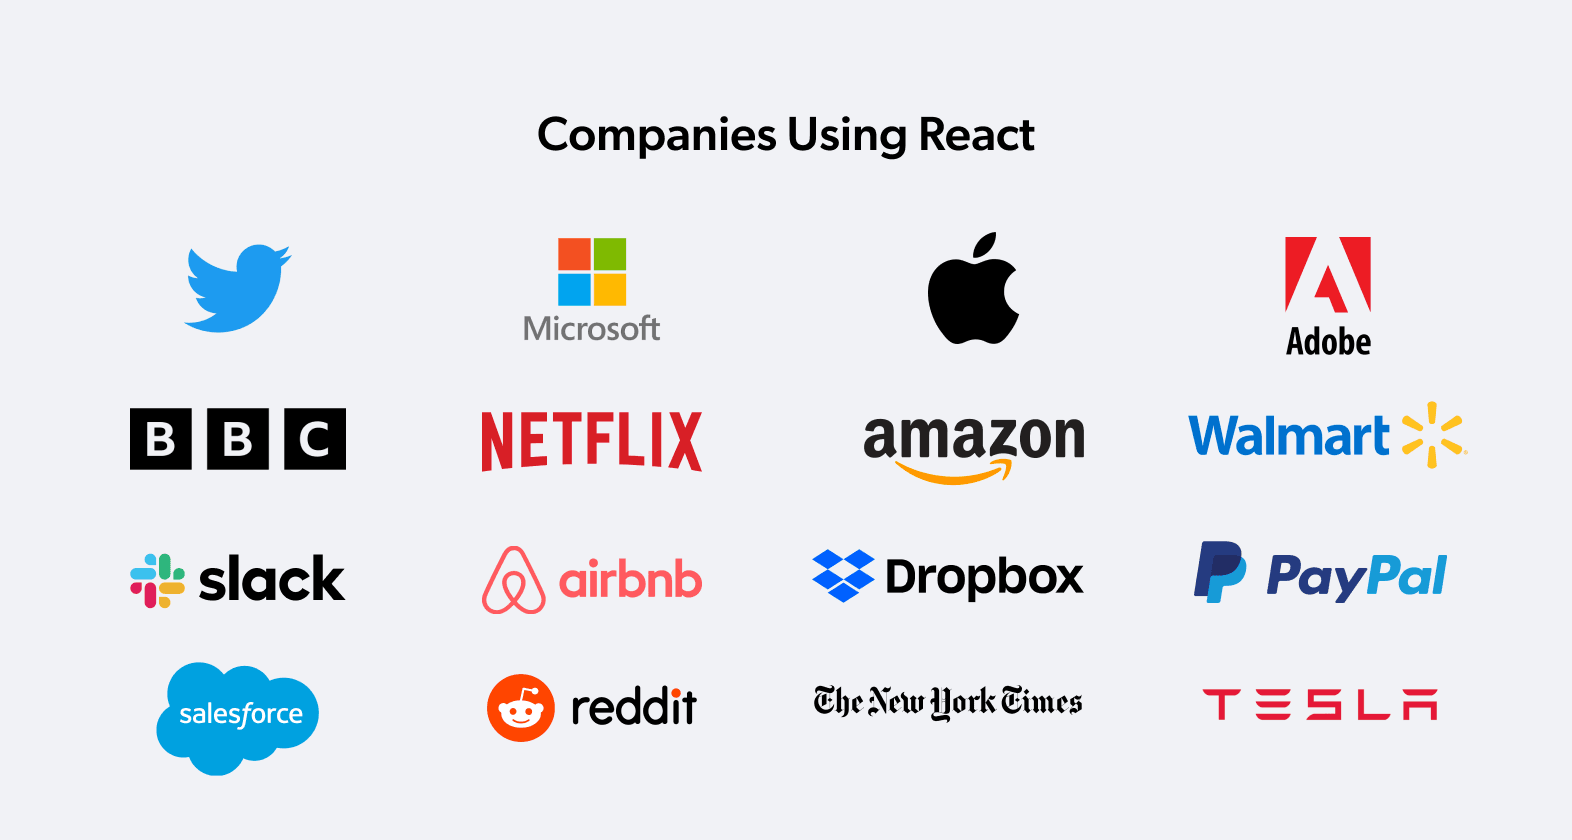 Companies using react